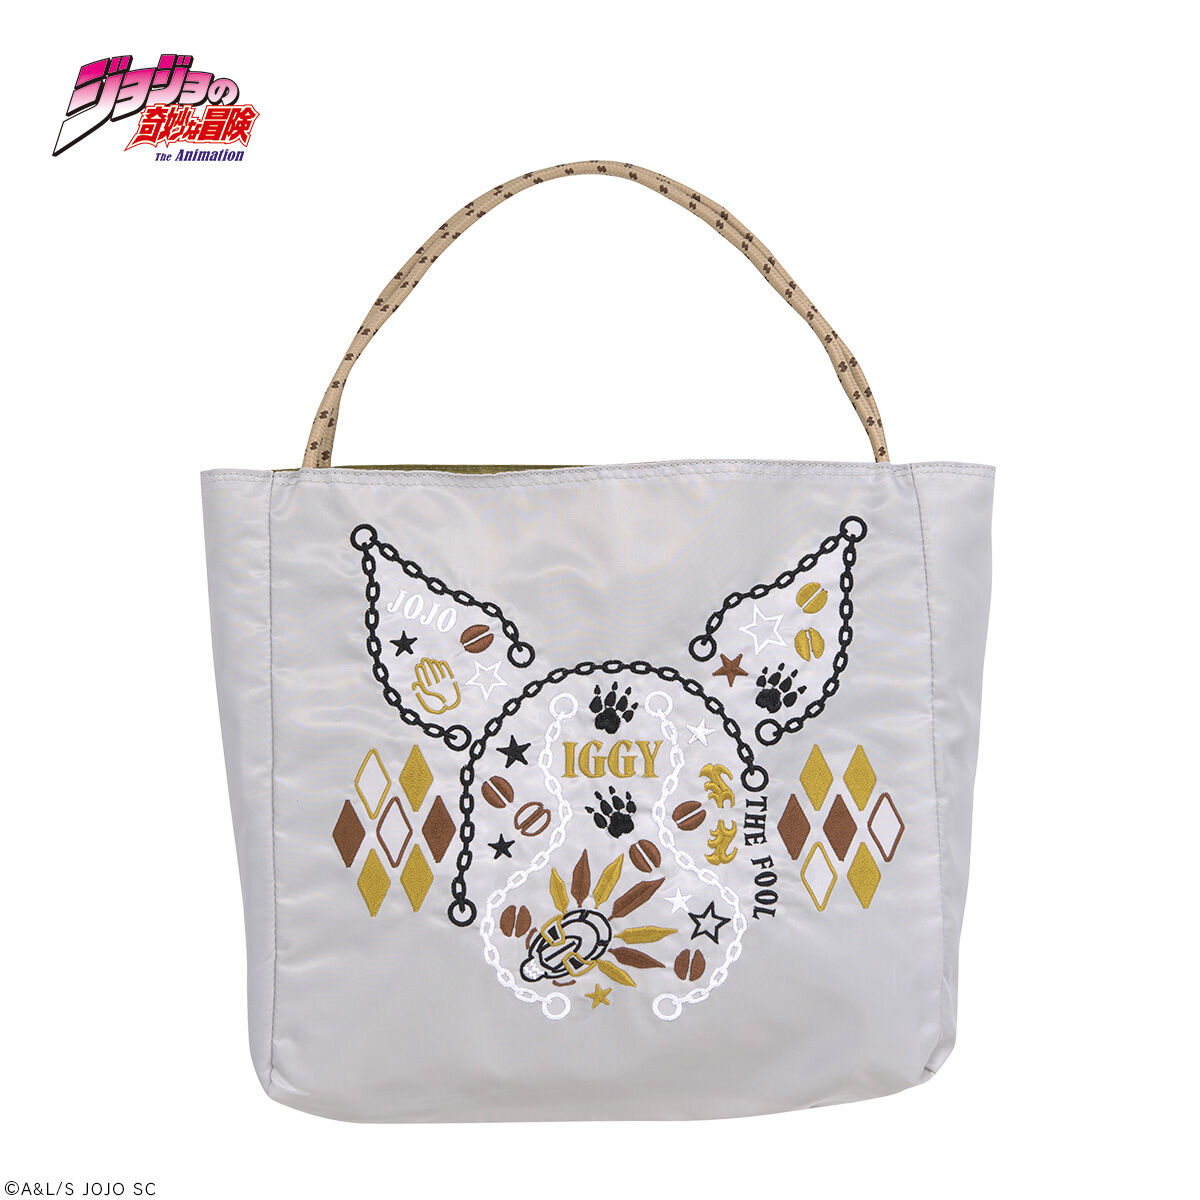 オノフィーフリー × ジョジョ イギー 刺繍バッグバッグ